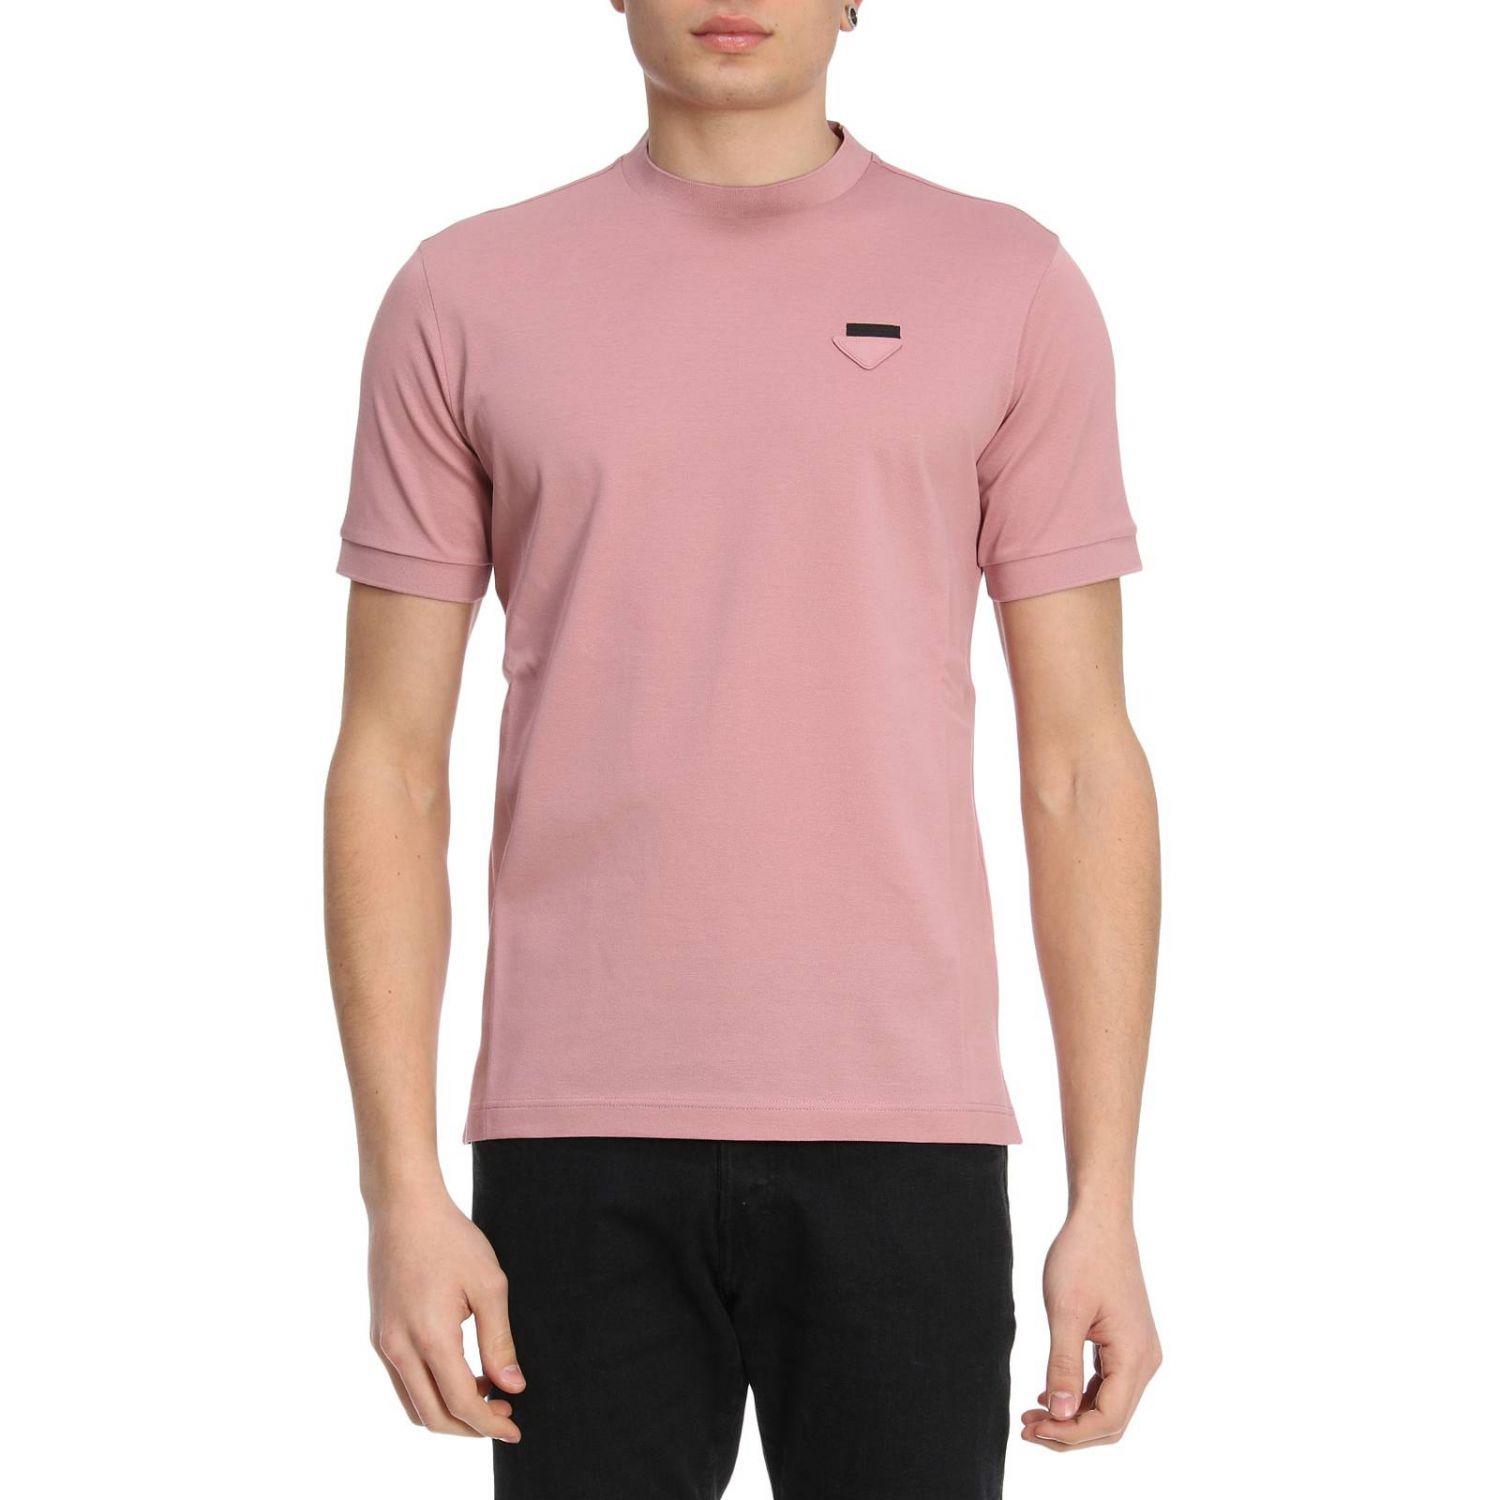 pink prada shirt